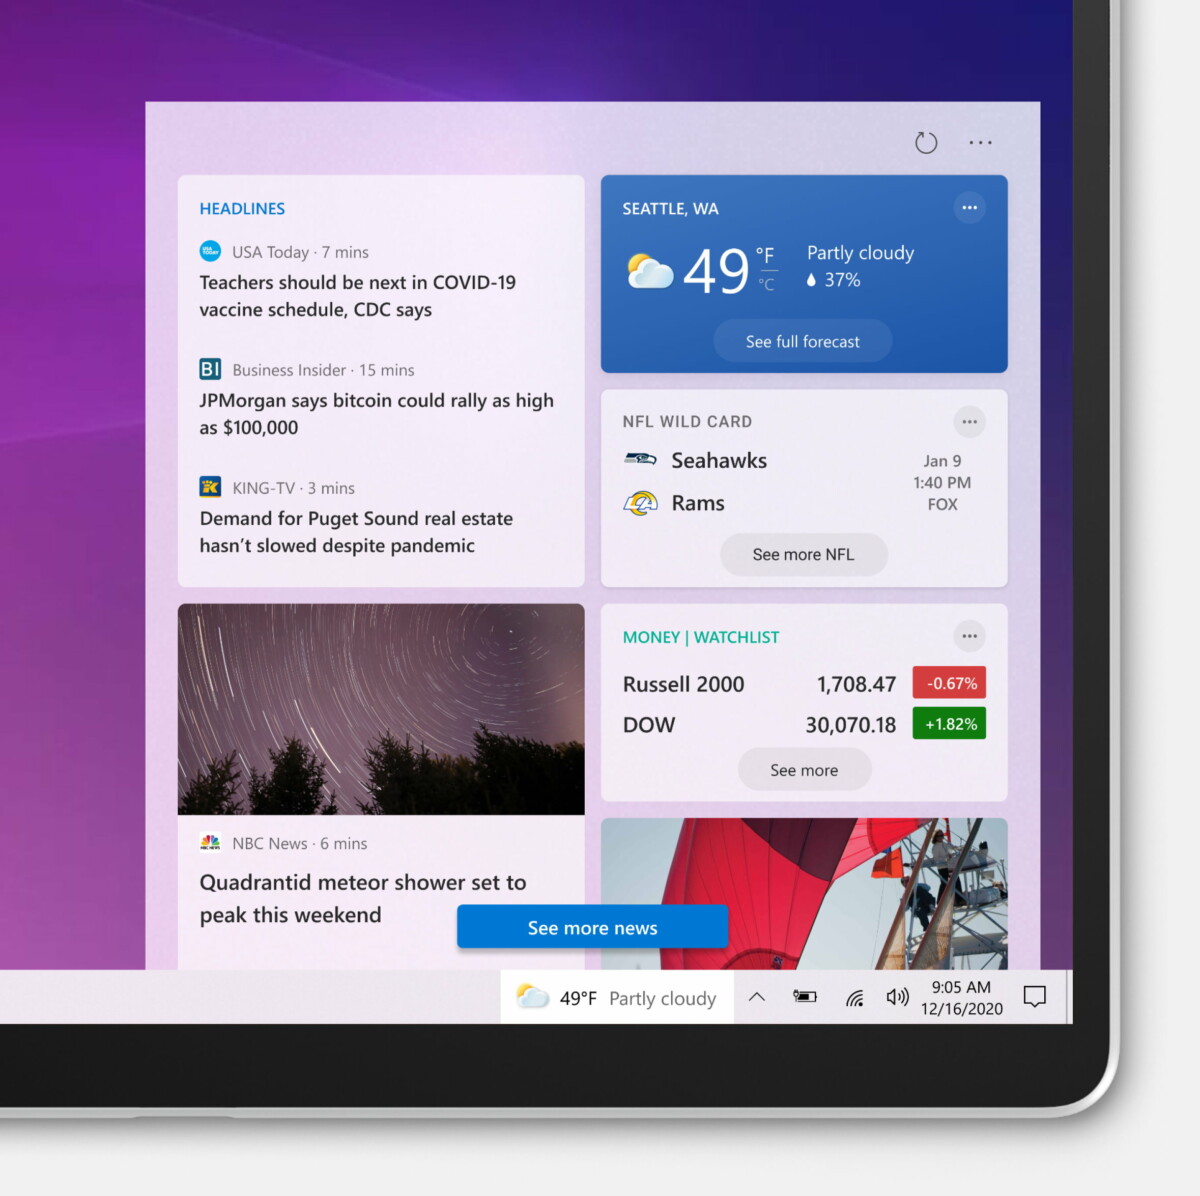 Windows 10 Widget barre des taches news et météo